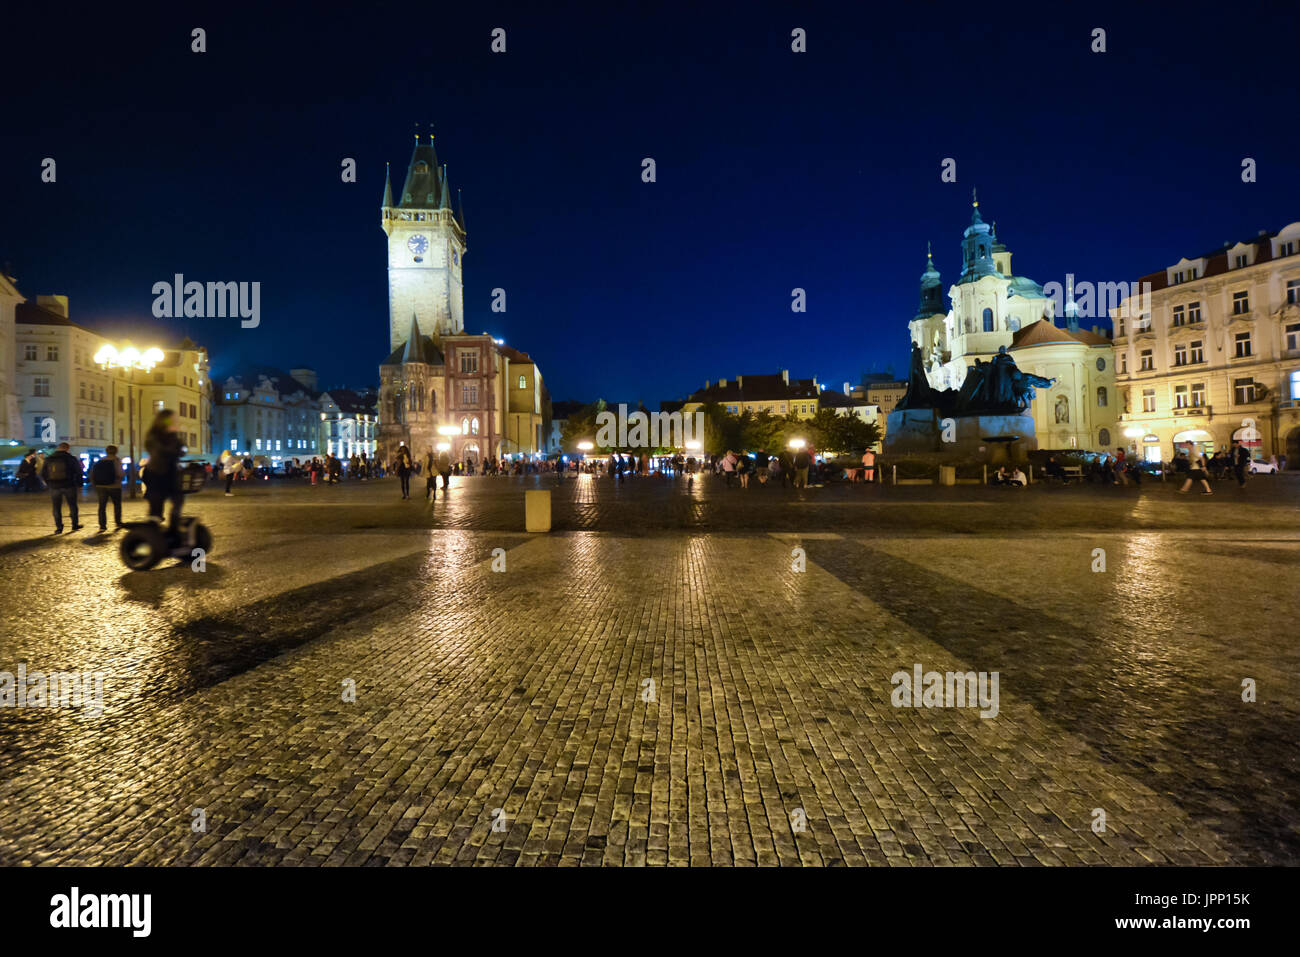 Abend im Altstädter Ring mit der Astronomischen Uhr, St. Nicholas Kirche und des Jan Hus Denkmal im Hintergrund in Prag, Tschechische Republix Stockfoto